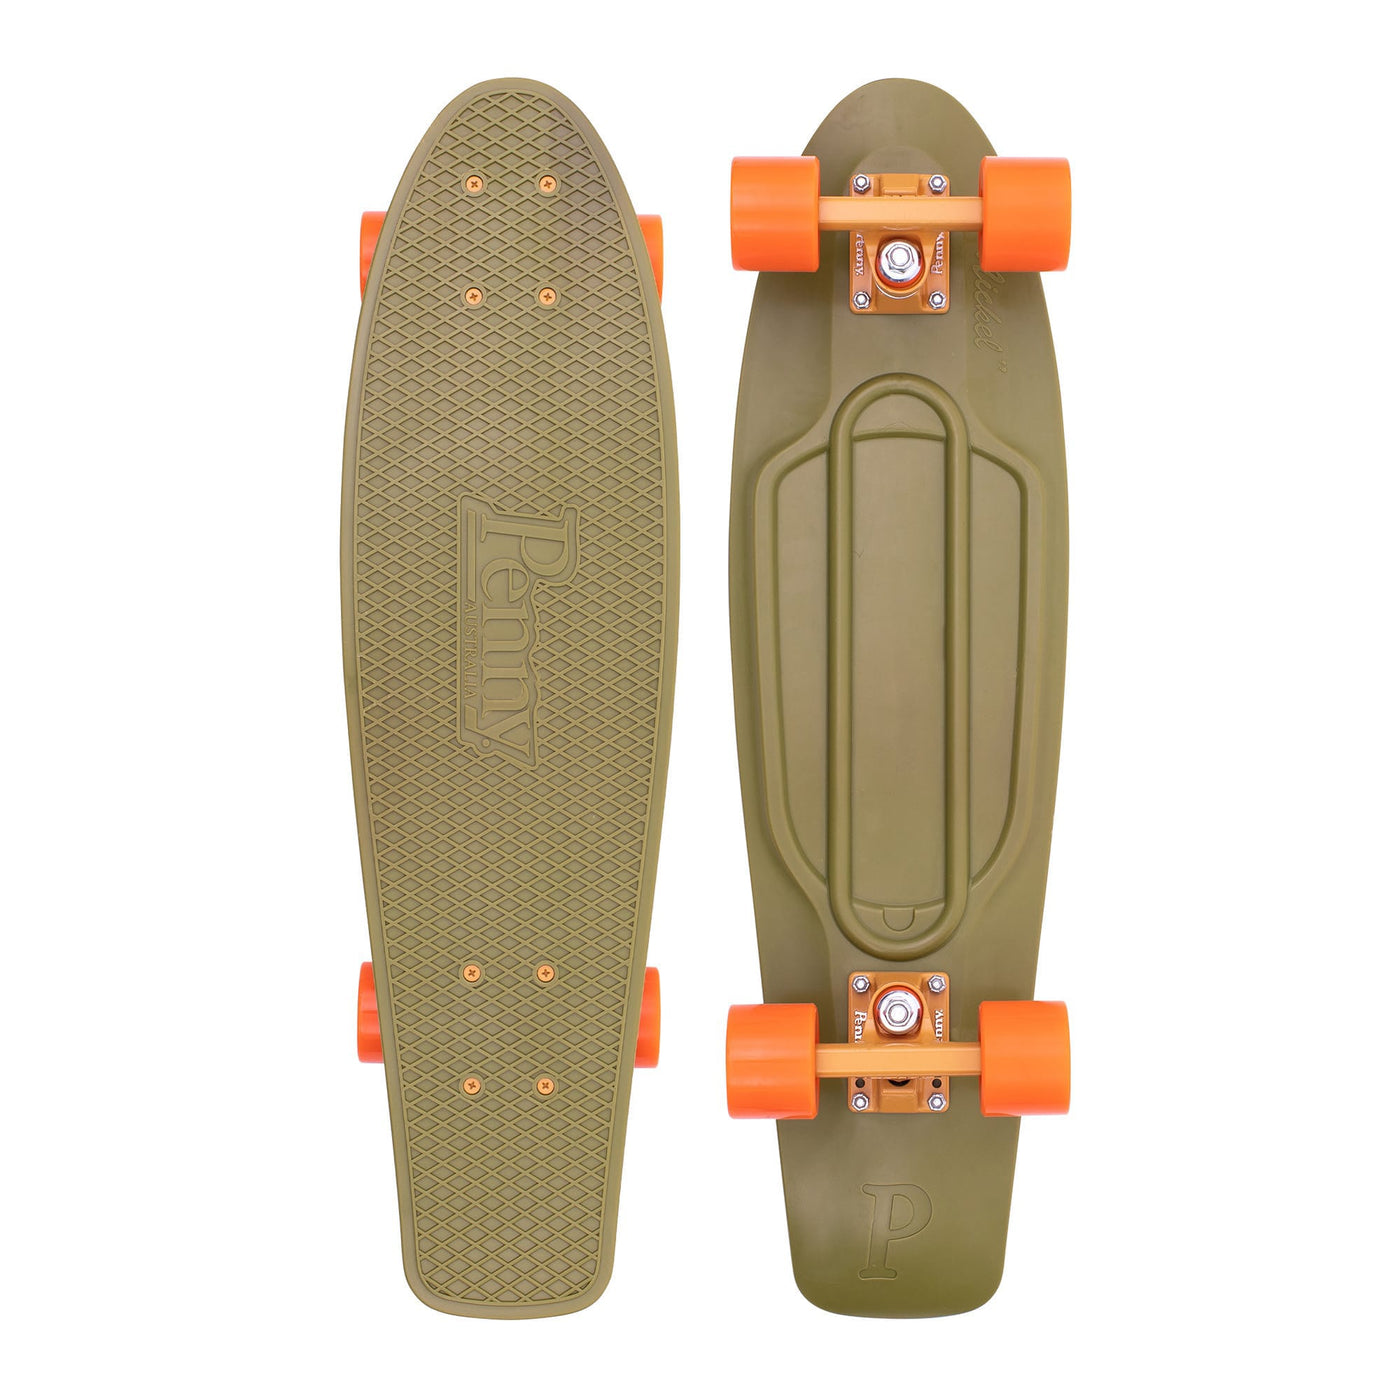 Burnt Olive 27" Complete Cruiser Skateboard Penny Skateboards | Penny Board